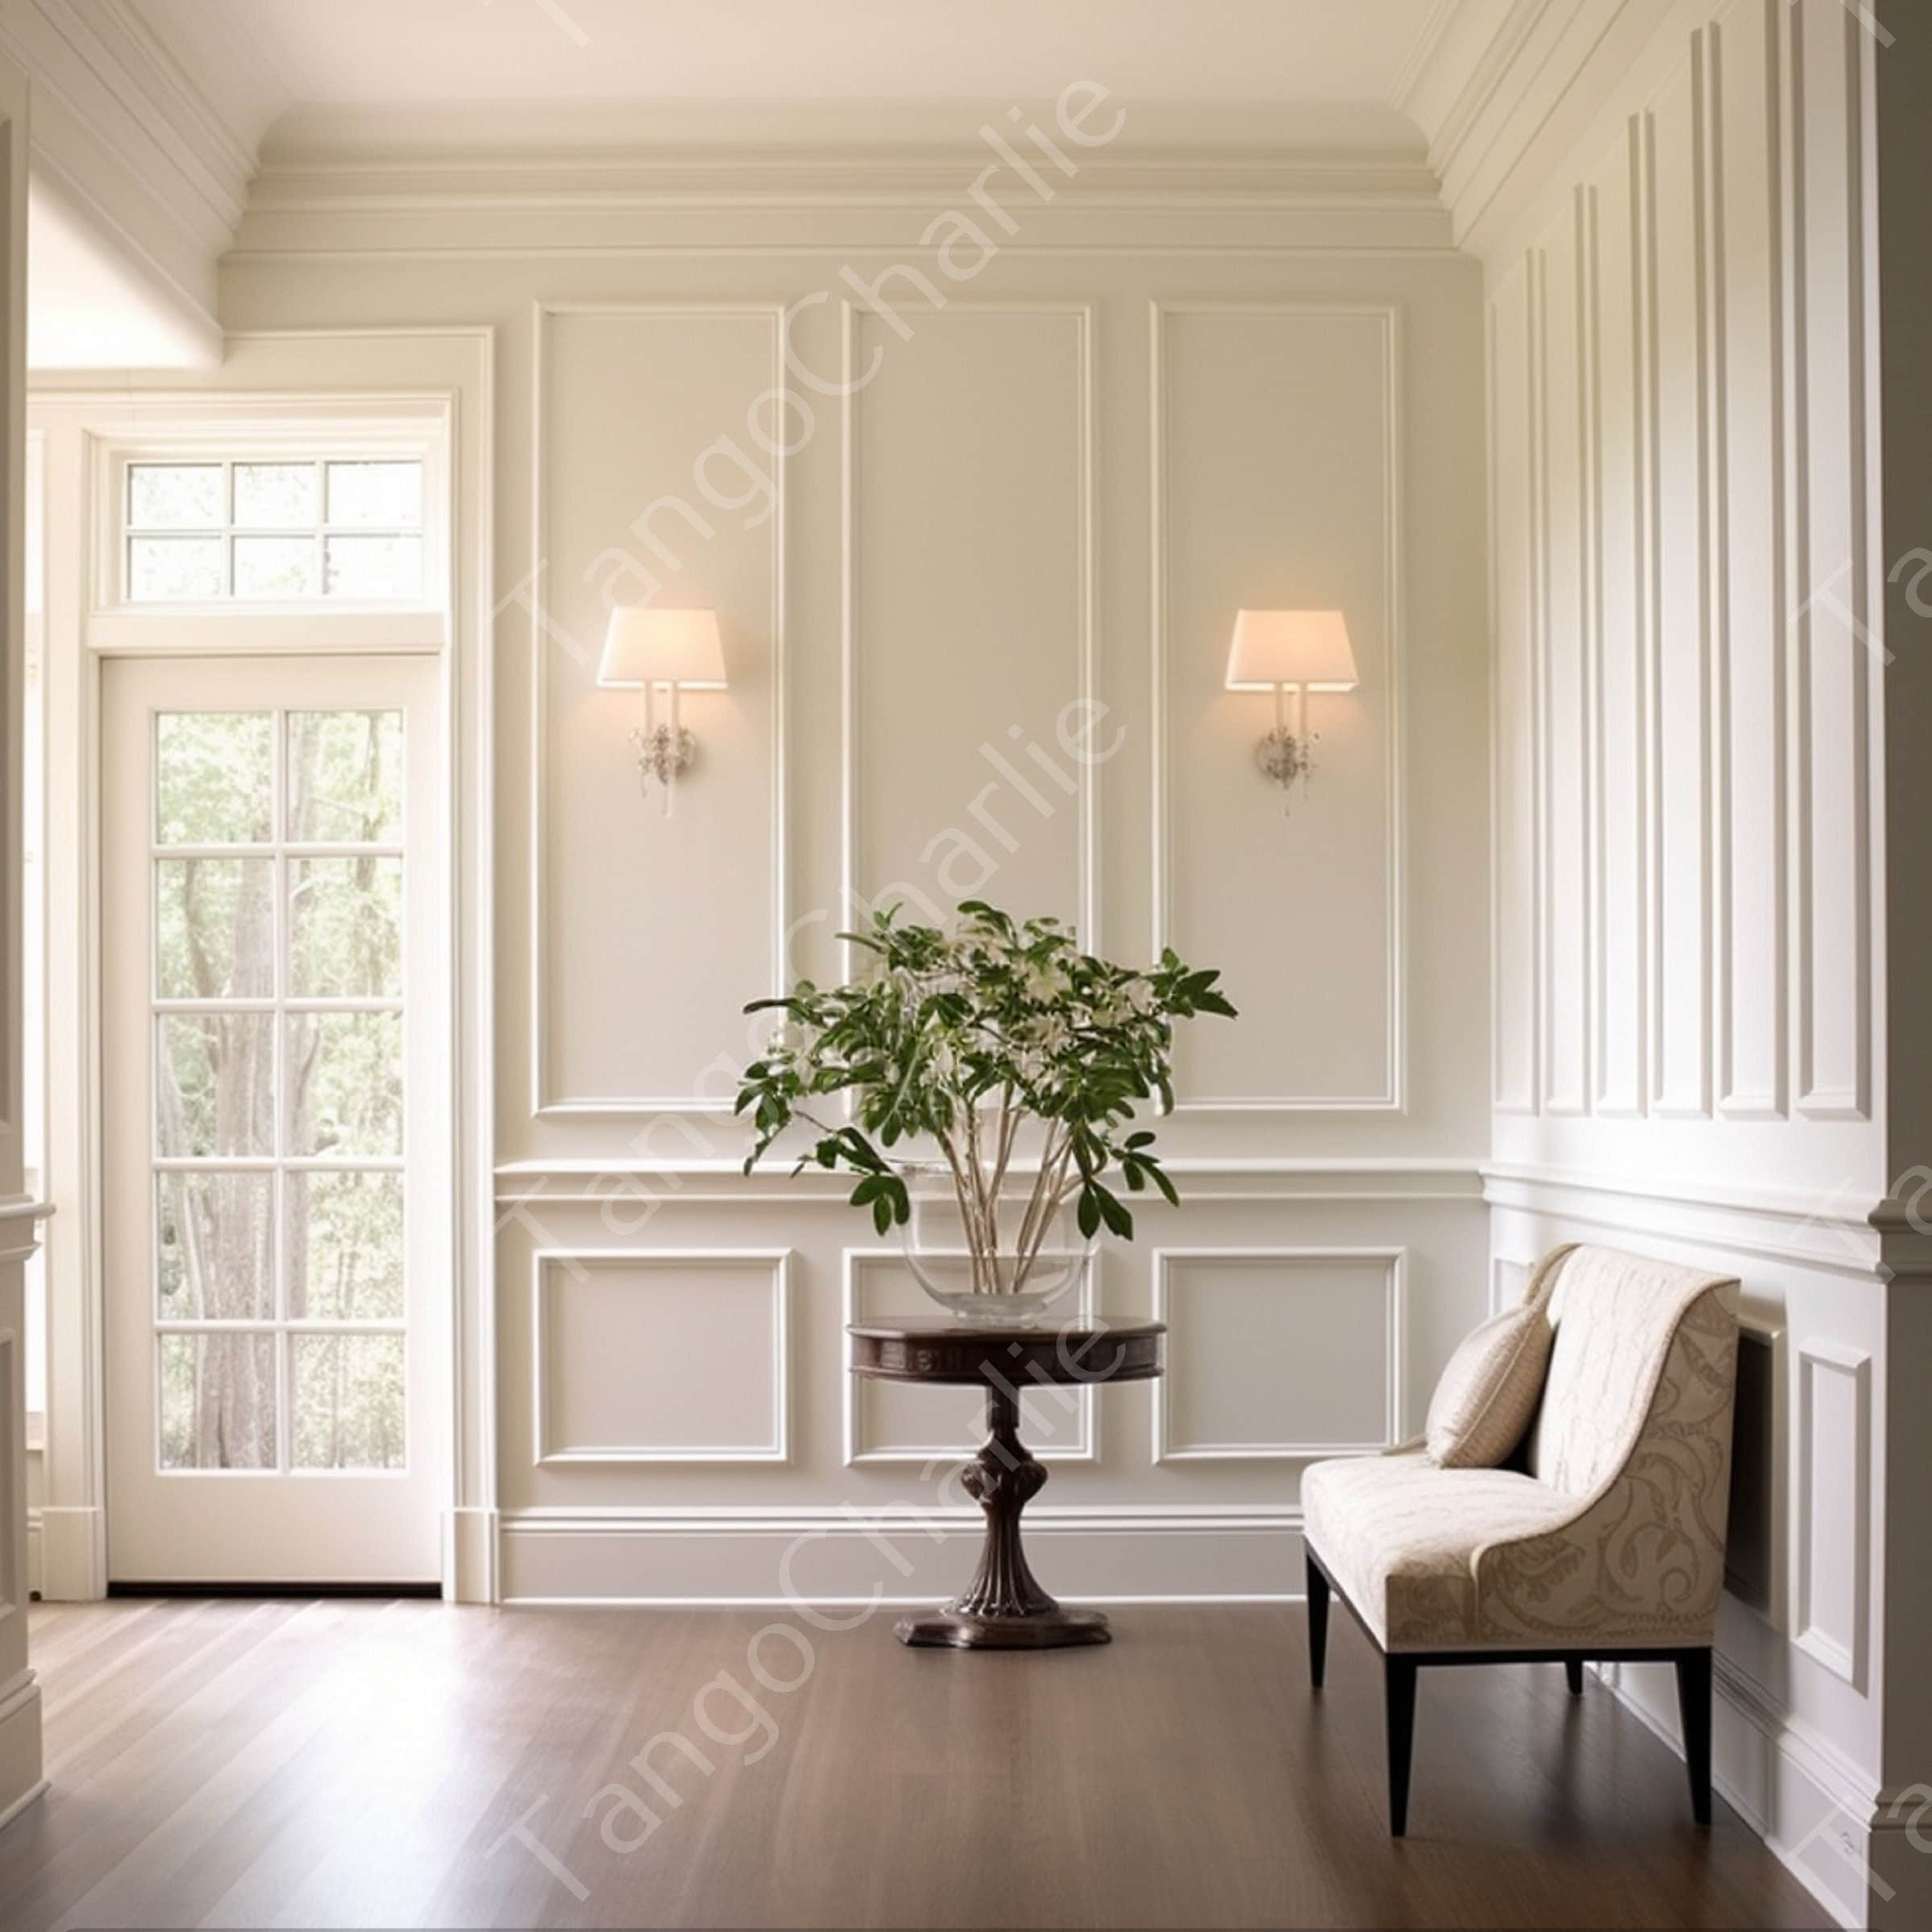 Molduras de pared para decoración de habitaciones, cada moldura mide 94,4 x  1 x 0,6 pulgadas, paneles de pared blancos duraderos pintables para